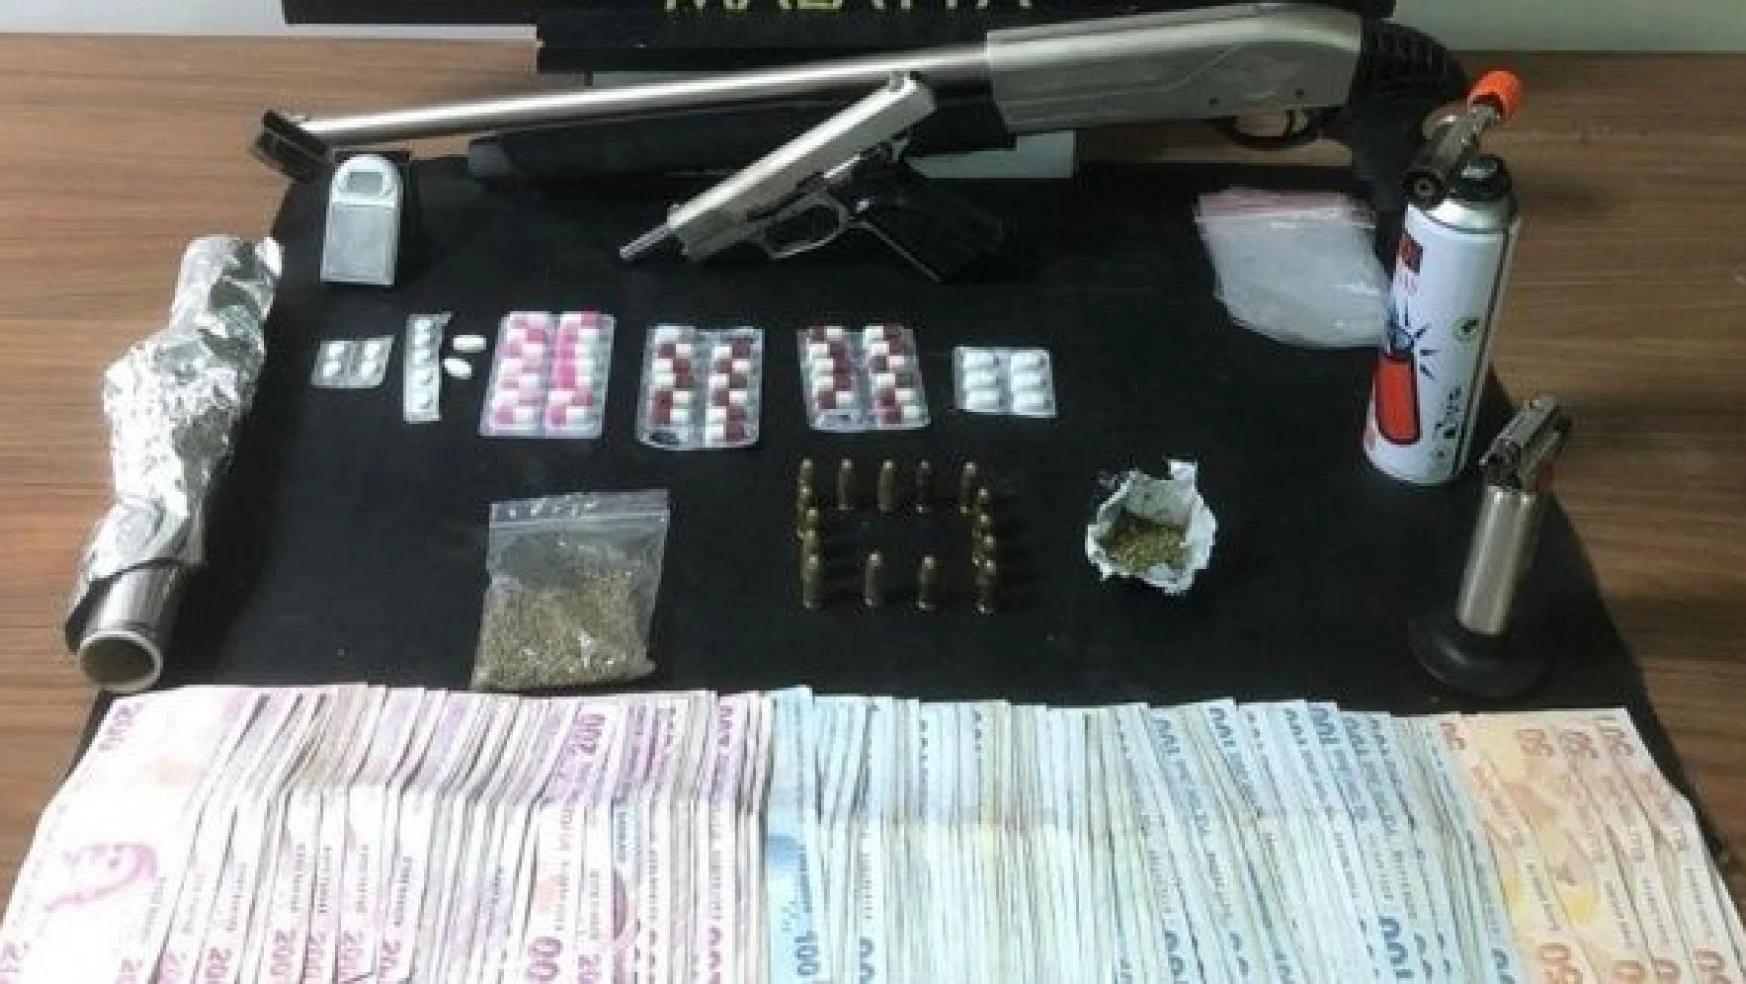 Malatya'da uyuşturucu operasyonları!